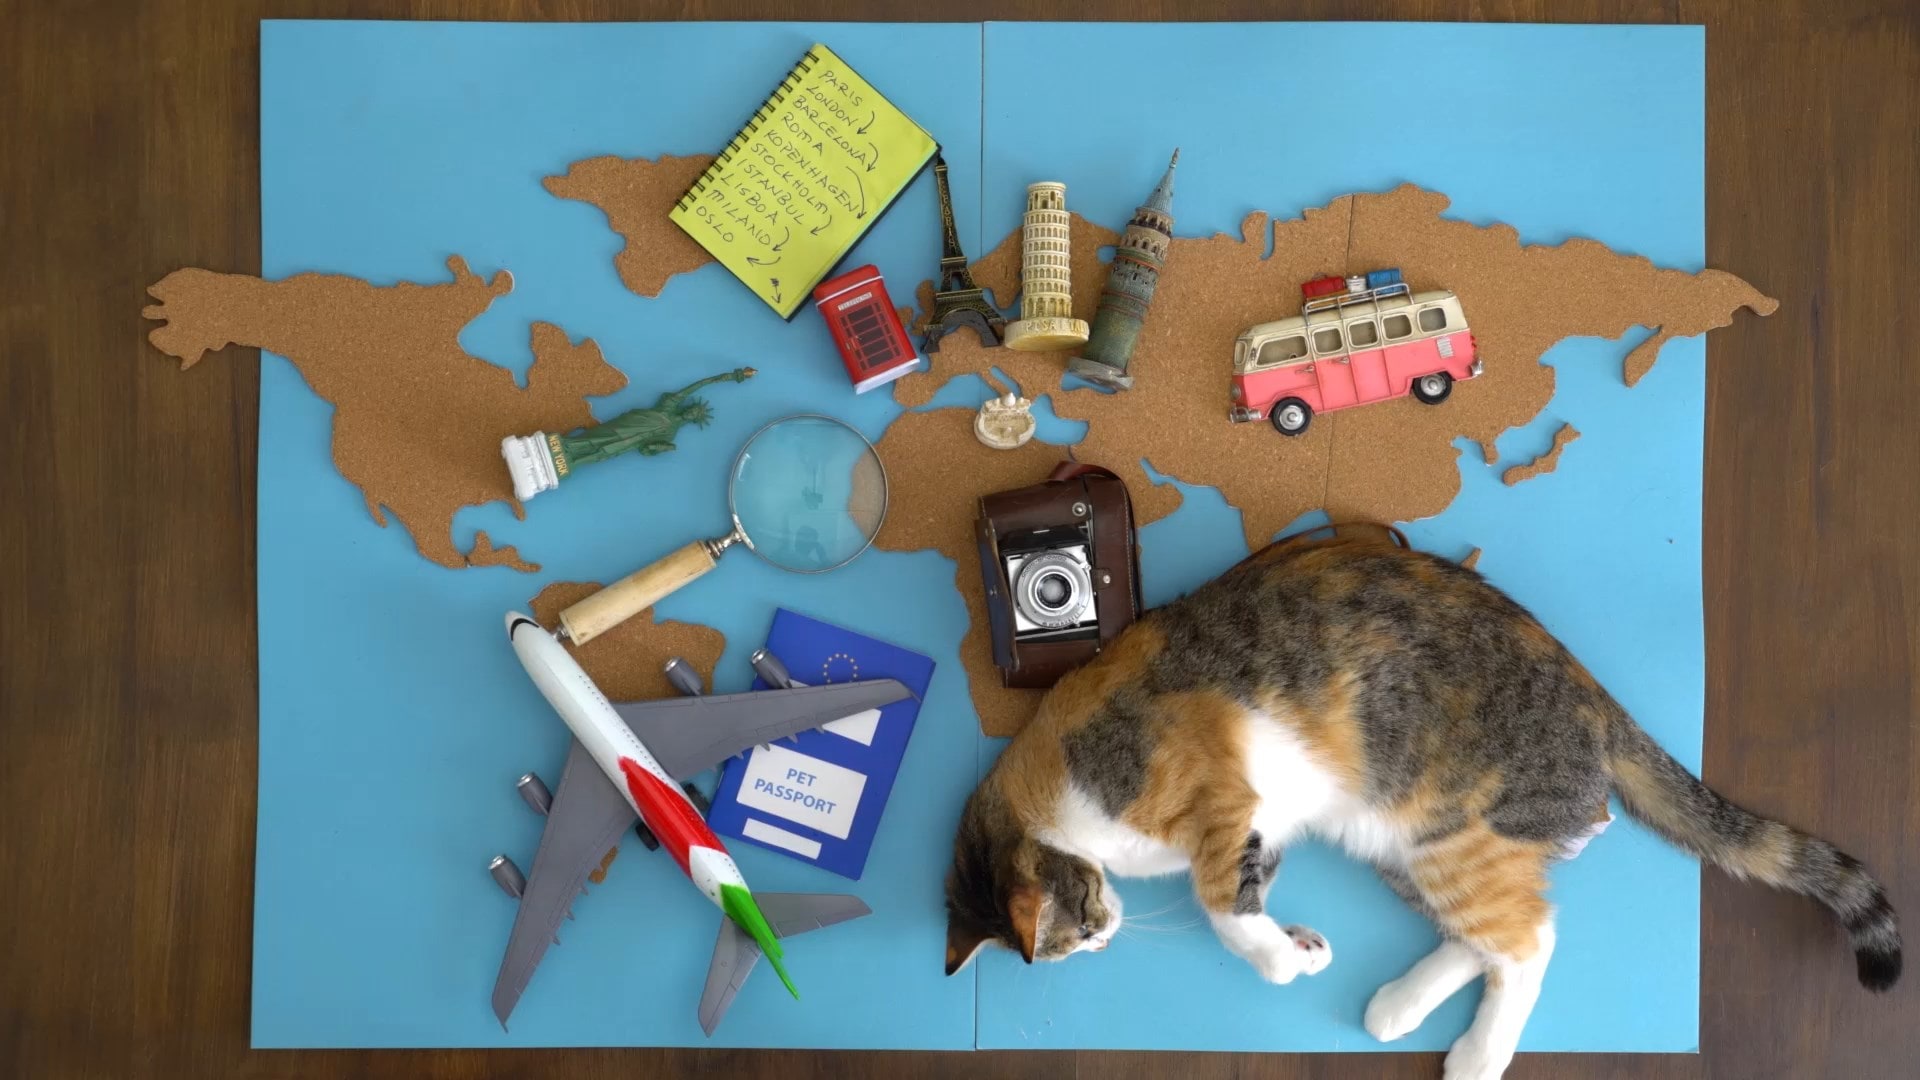 책상 위에 파란색 세계지도 위에 장난감 비행기, 돋보기, 카메라가 있고, 검은색과 밝은 갈색 무늬의 고양이가 옆으로 누워 움직이고 있는 영상